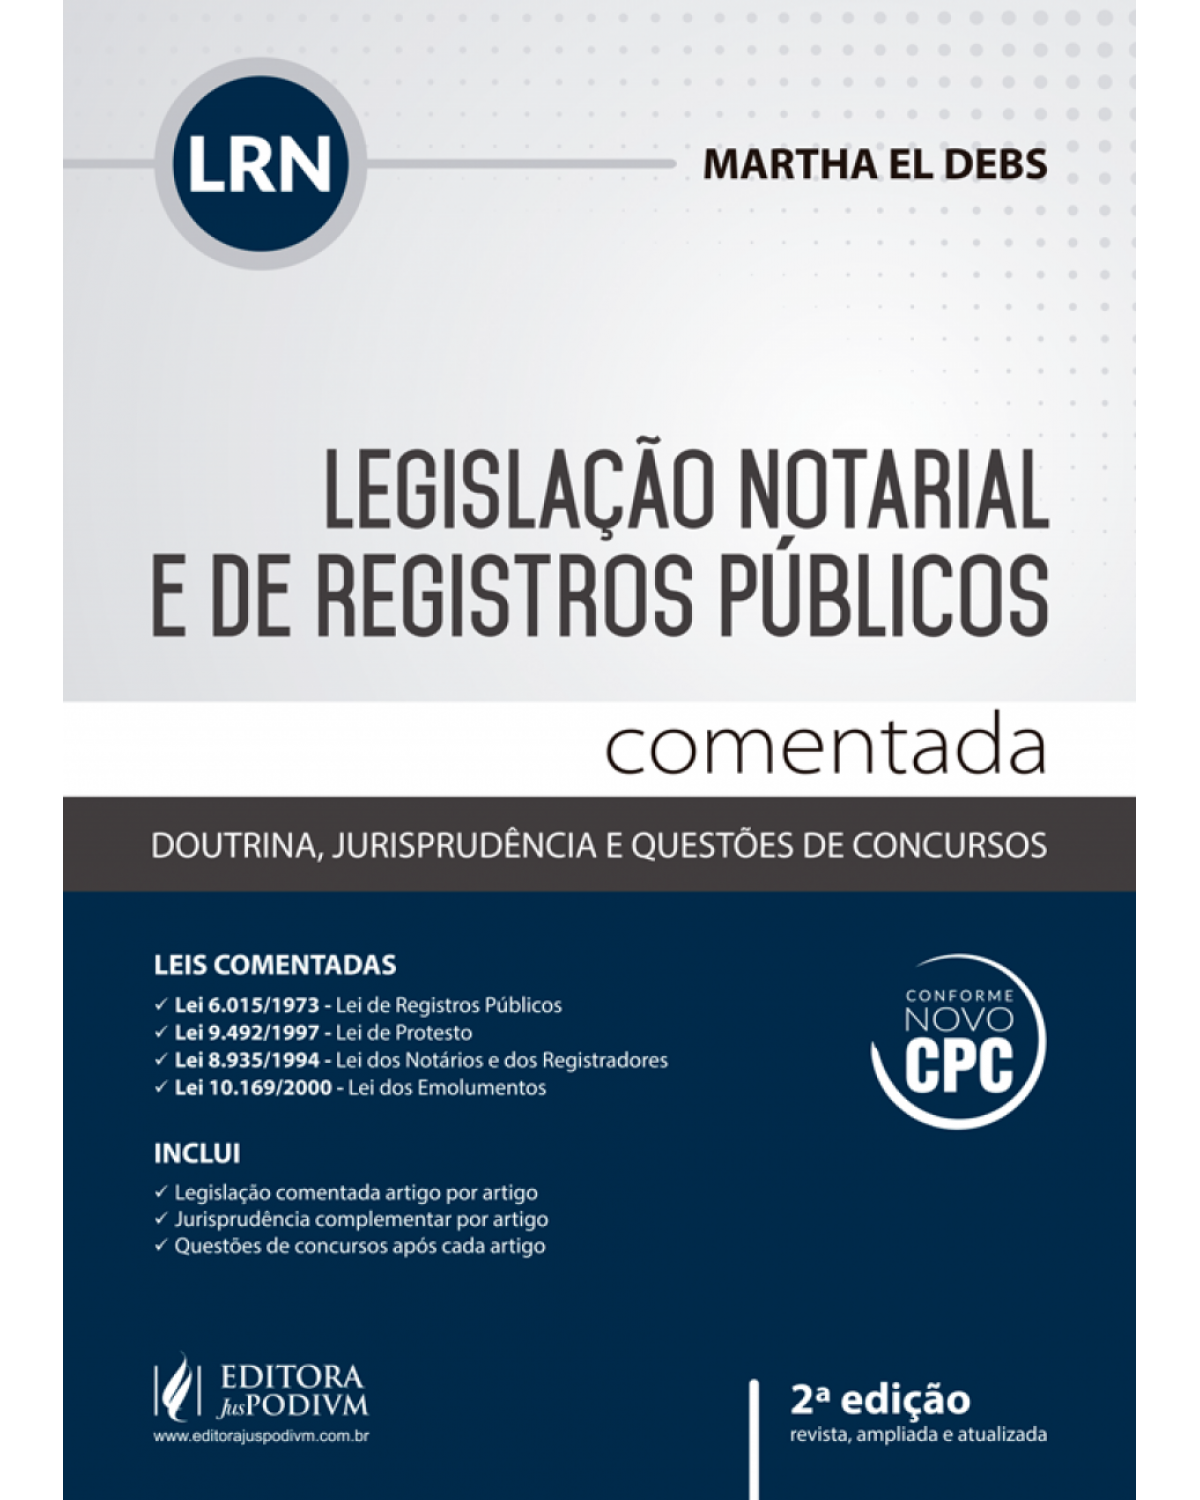 Legislação notarial e de registros públicos comentada - Doutrina, jurisprudência e questões de concursos - 2ª Edição | 2016